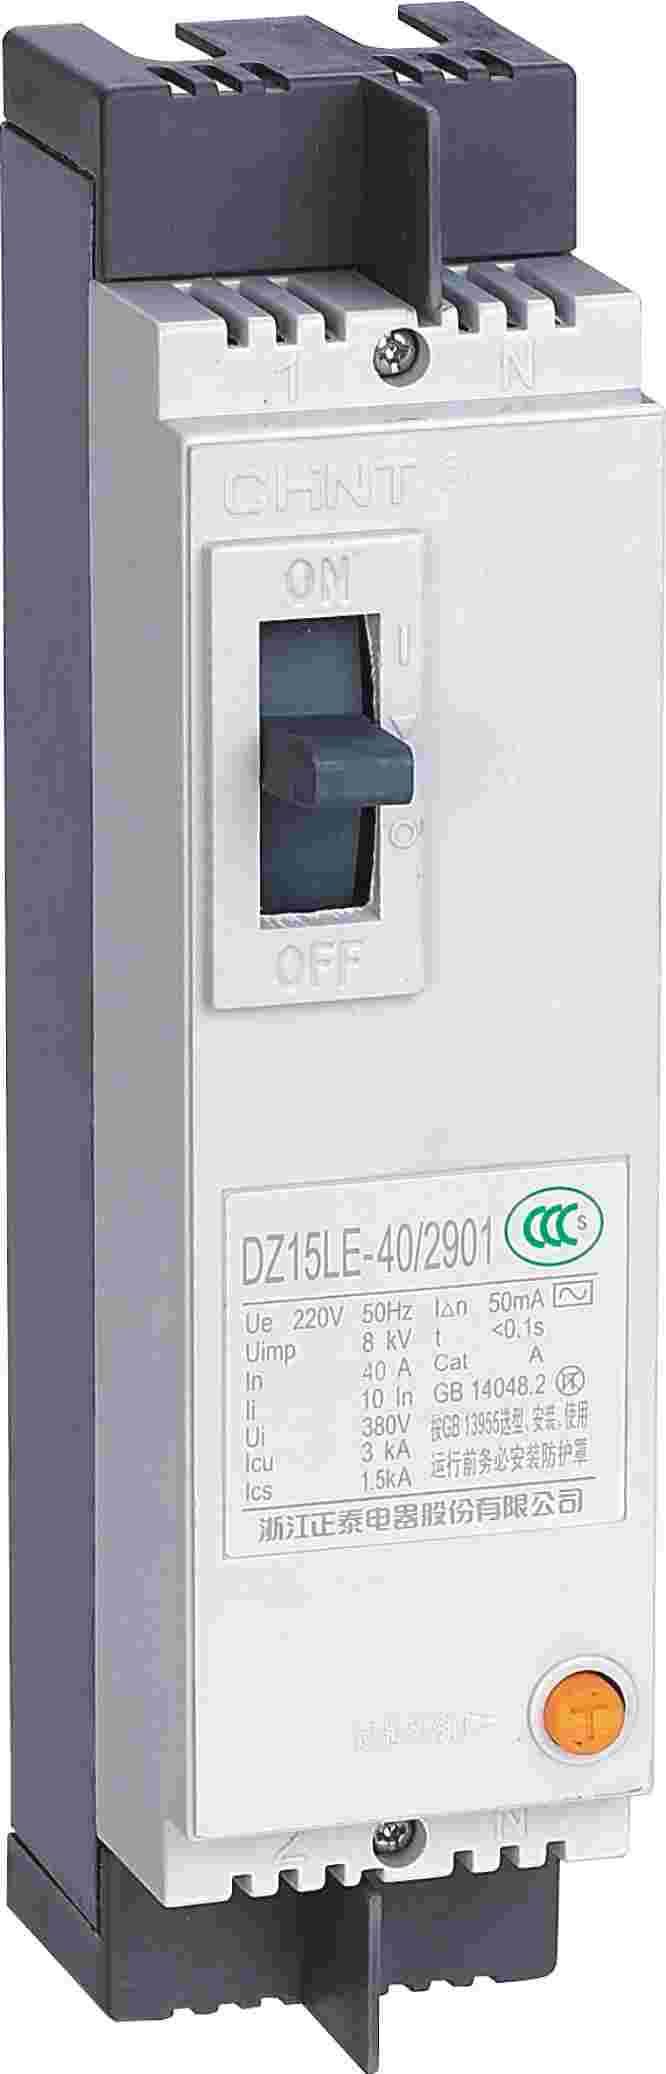 DZ15LE-40 2901 剩余电流动作断路器侧俯图.png